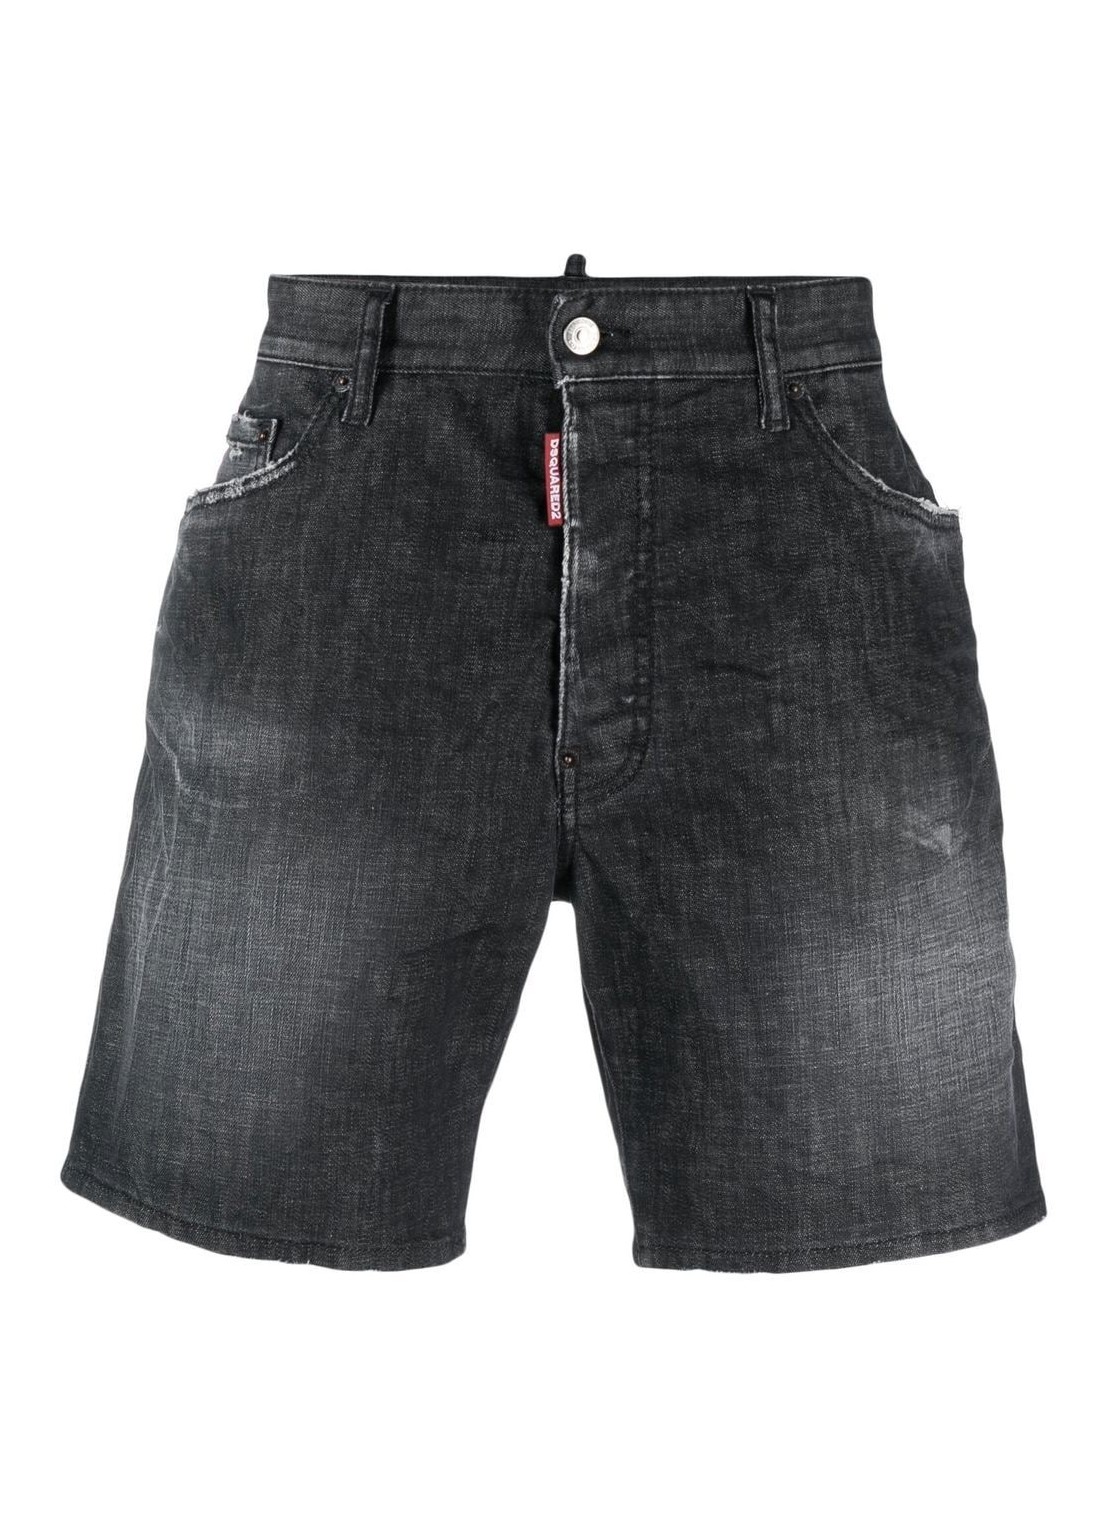 Pantalon corto dsquared short pant man marine short s74mu0804s30357 900 talla 52
 